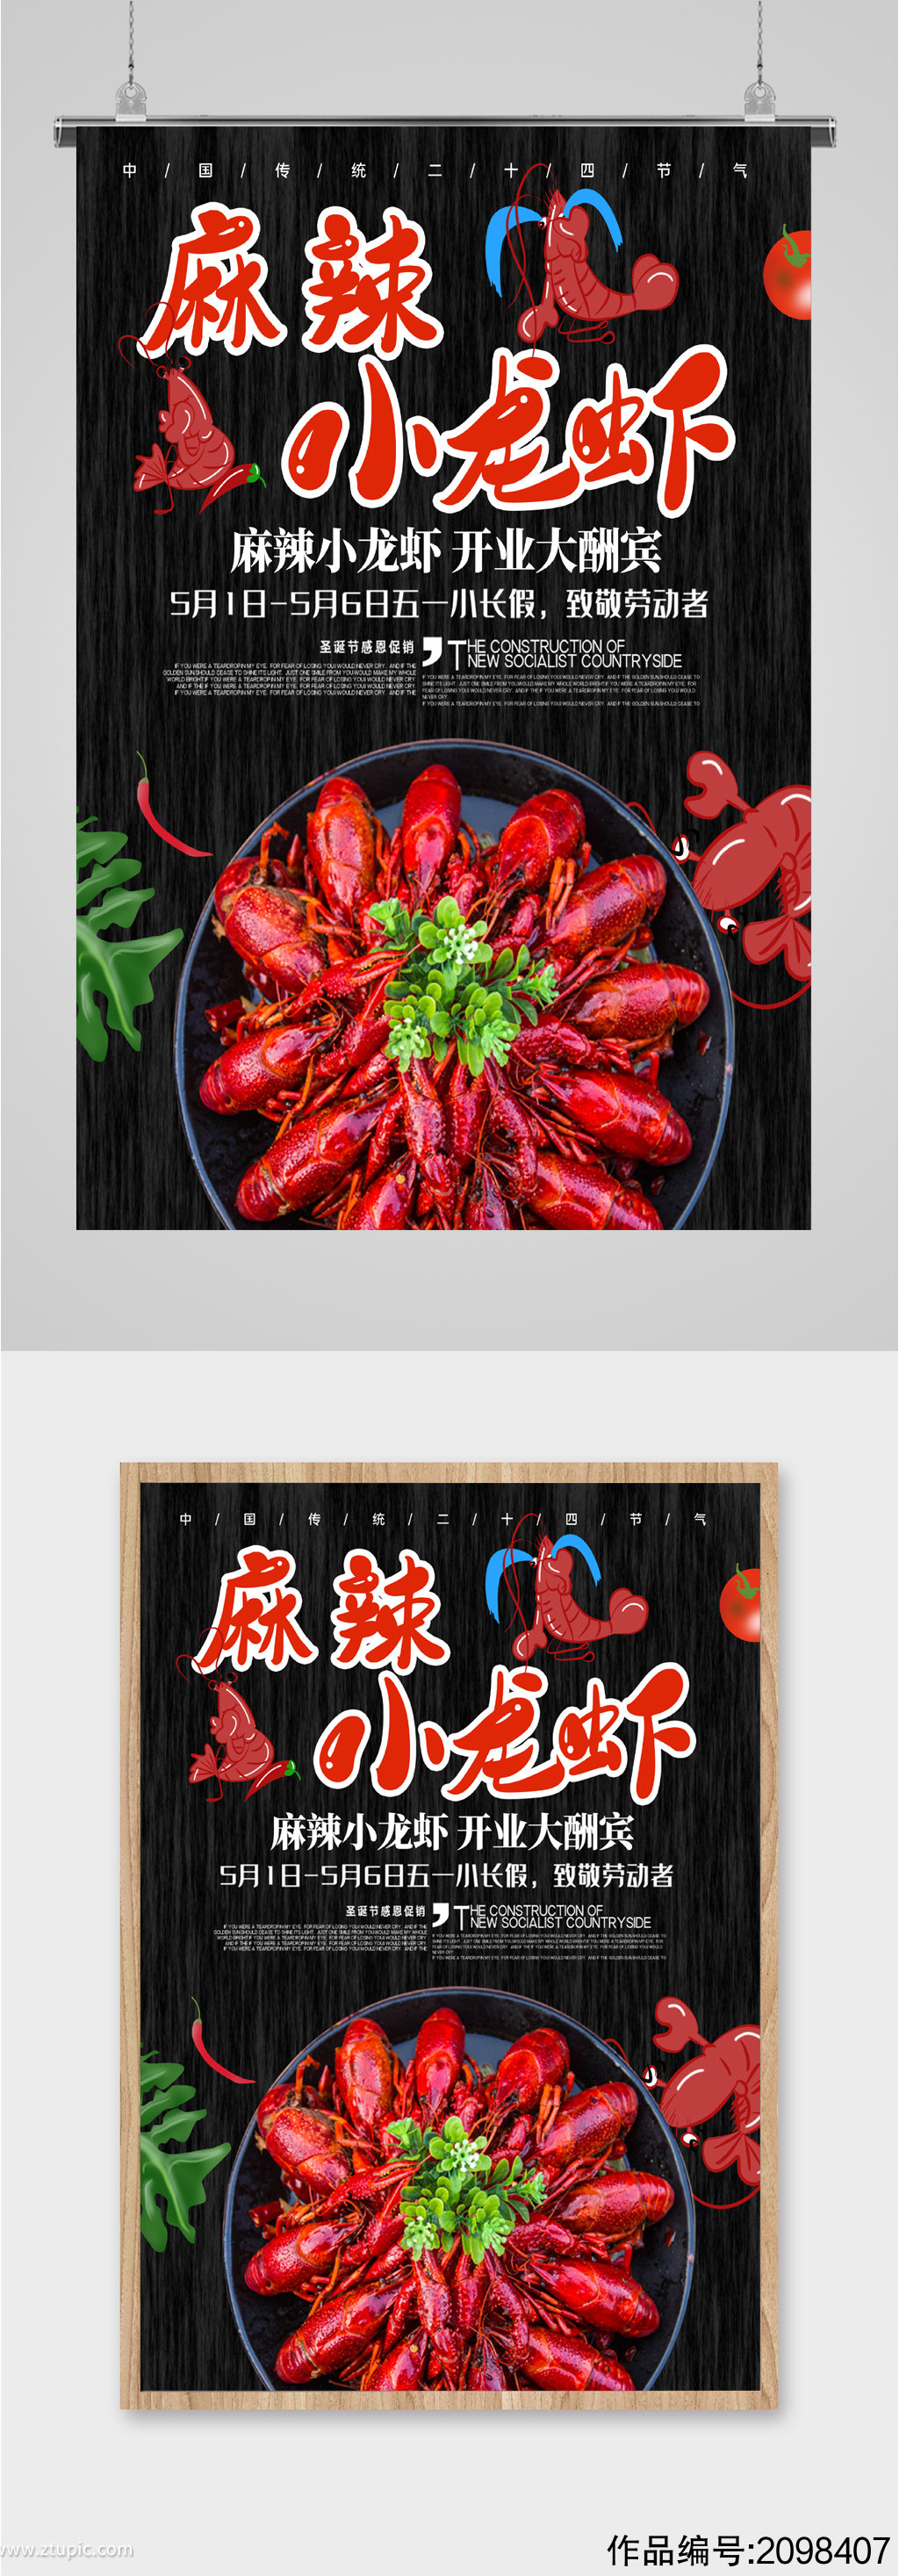 麻辣小龙虾美食酬宾海报